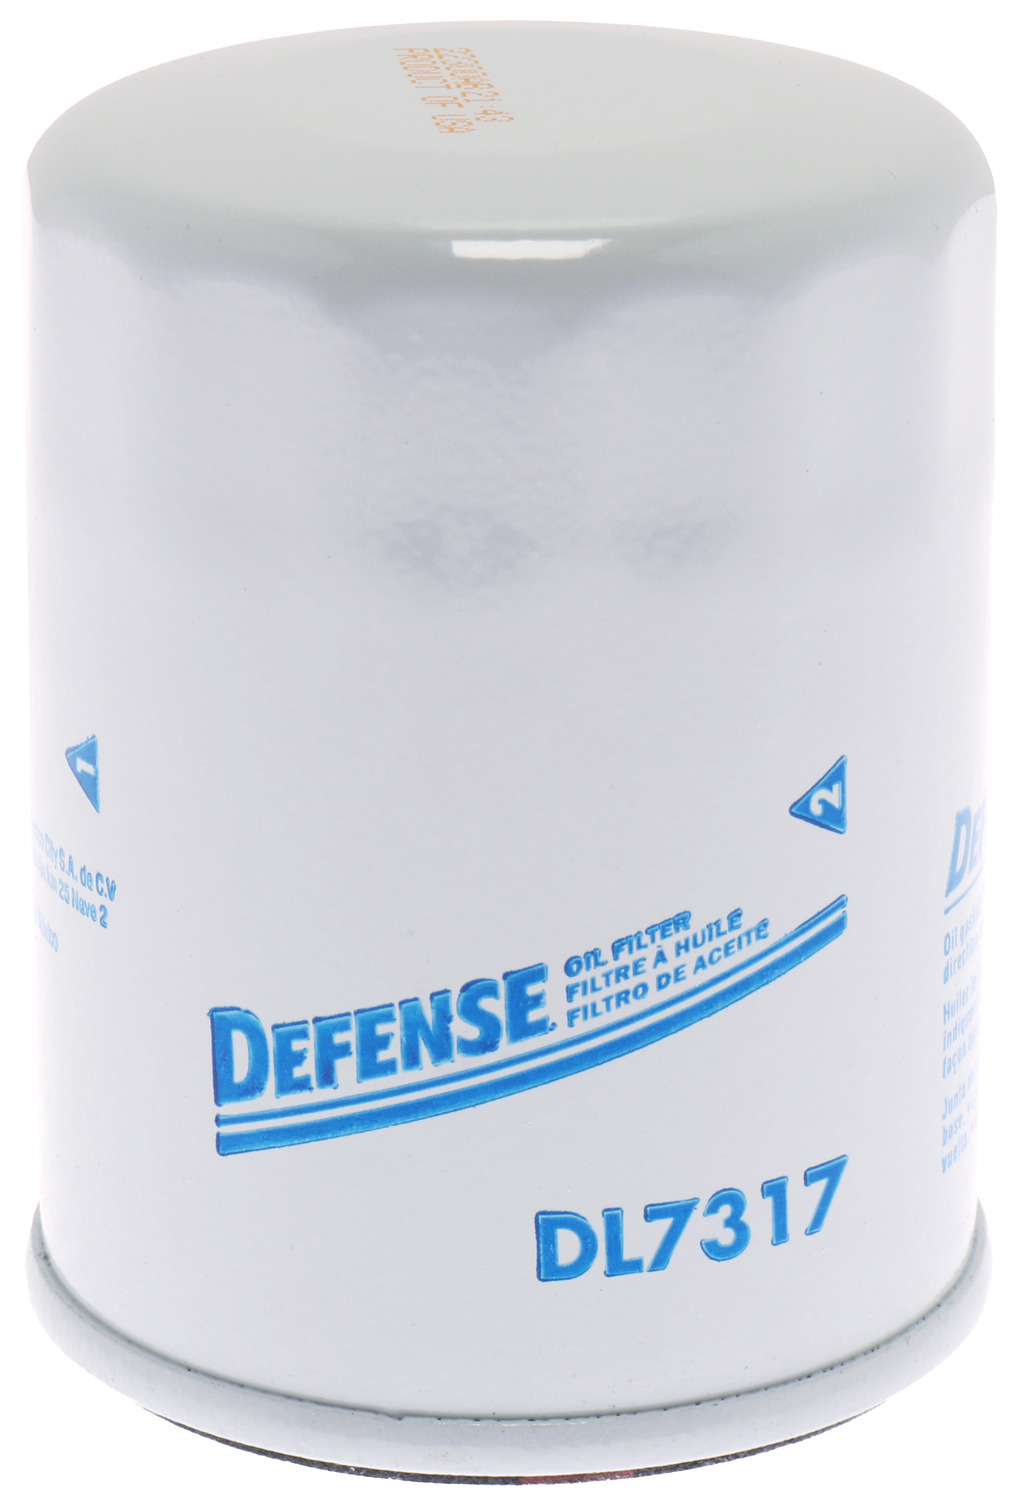 DEFENSE FILTERS (FRAM) - Engine Oil Filter - Part Number: DL7317 -   